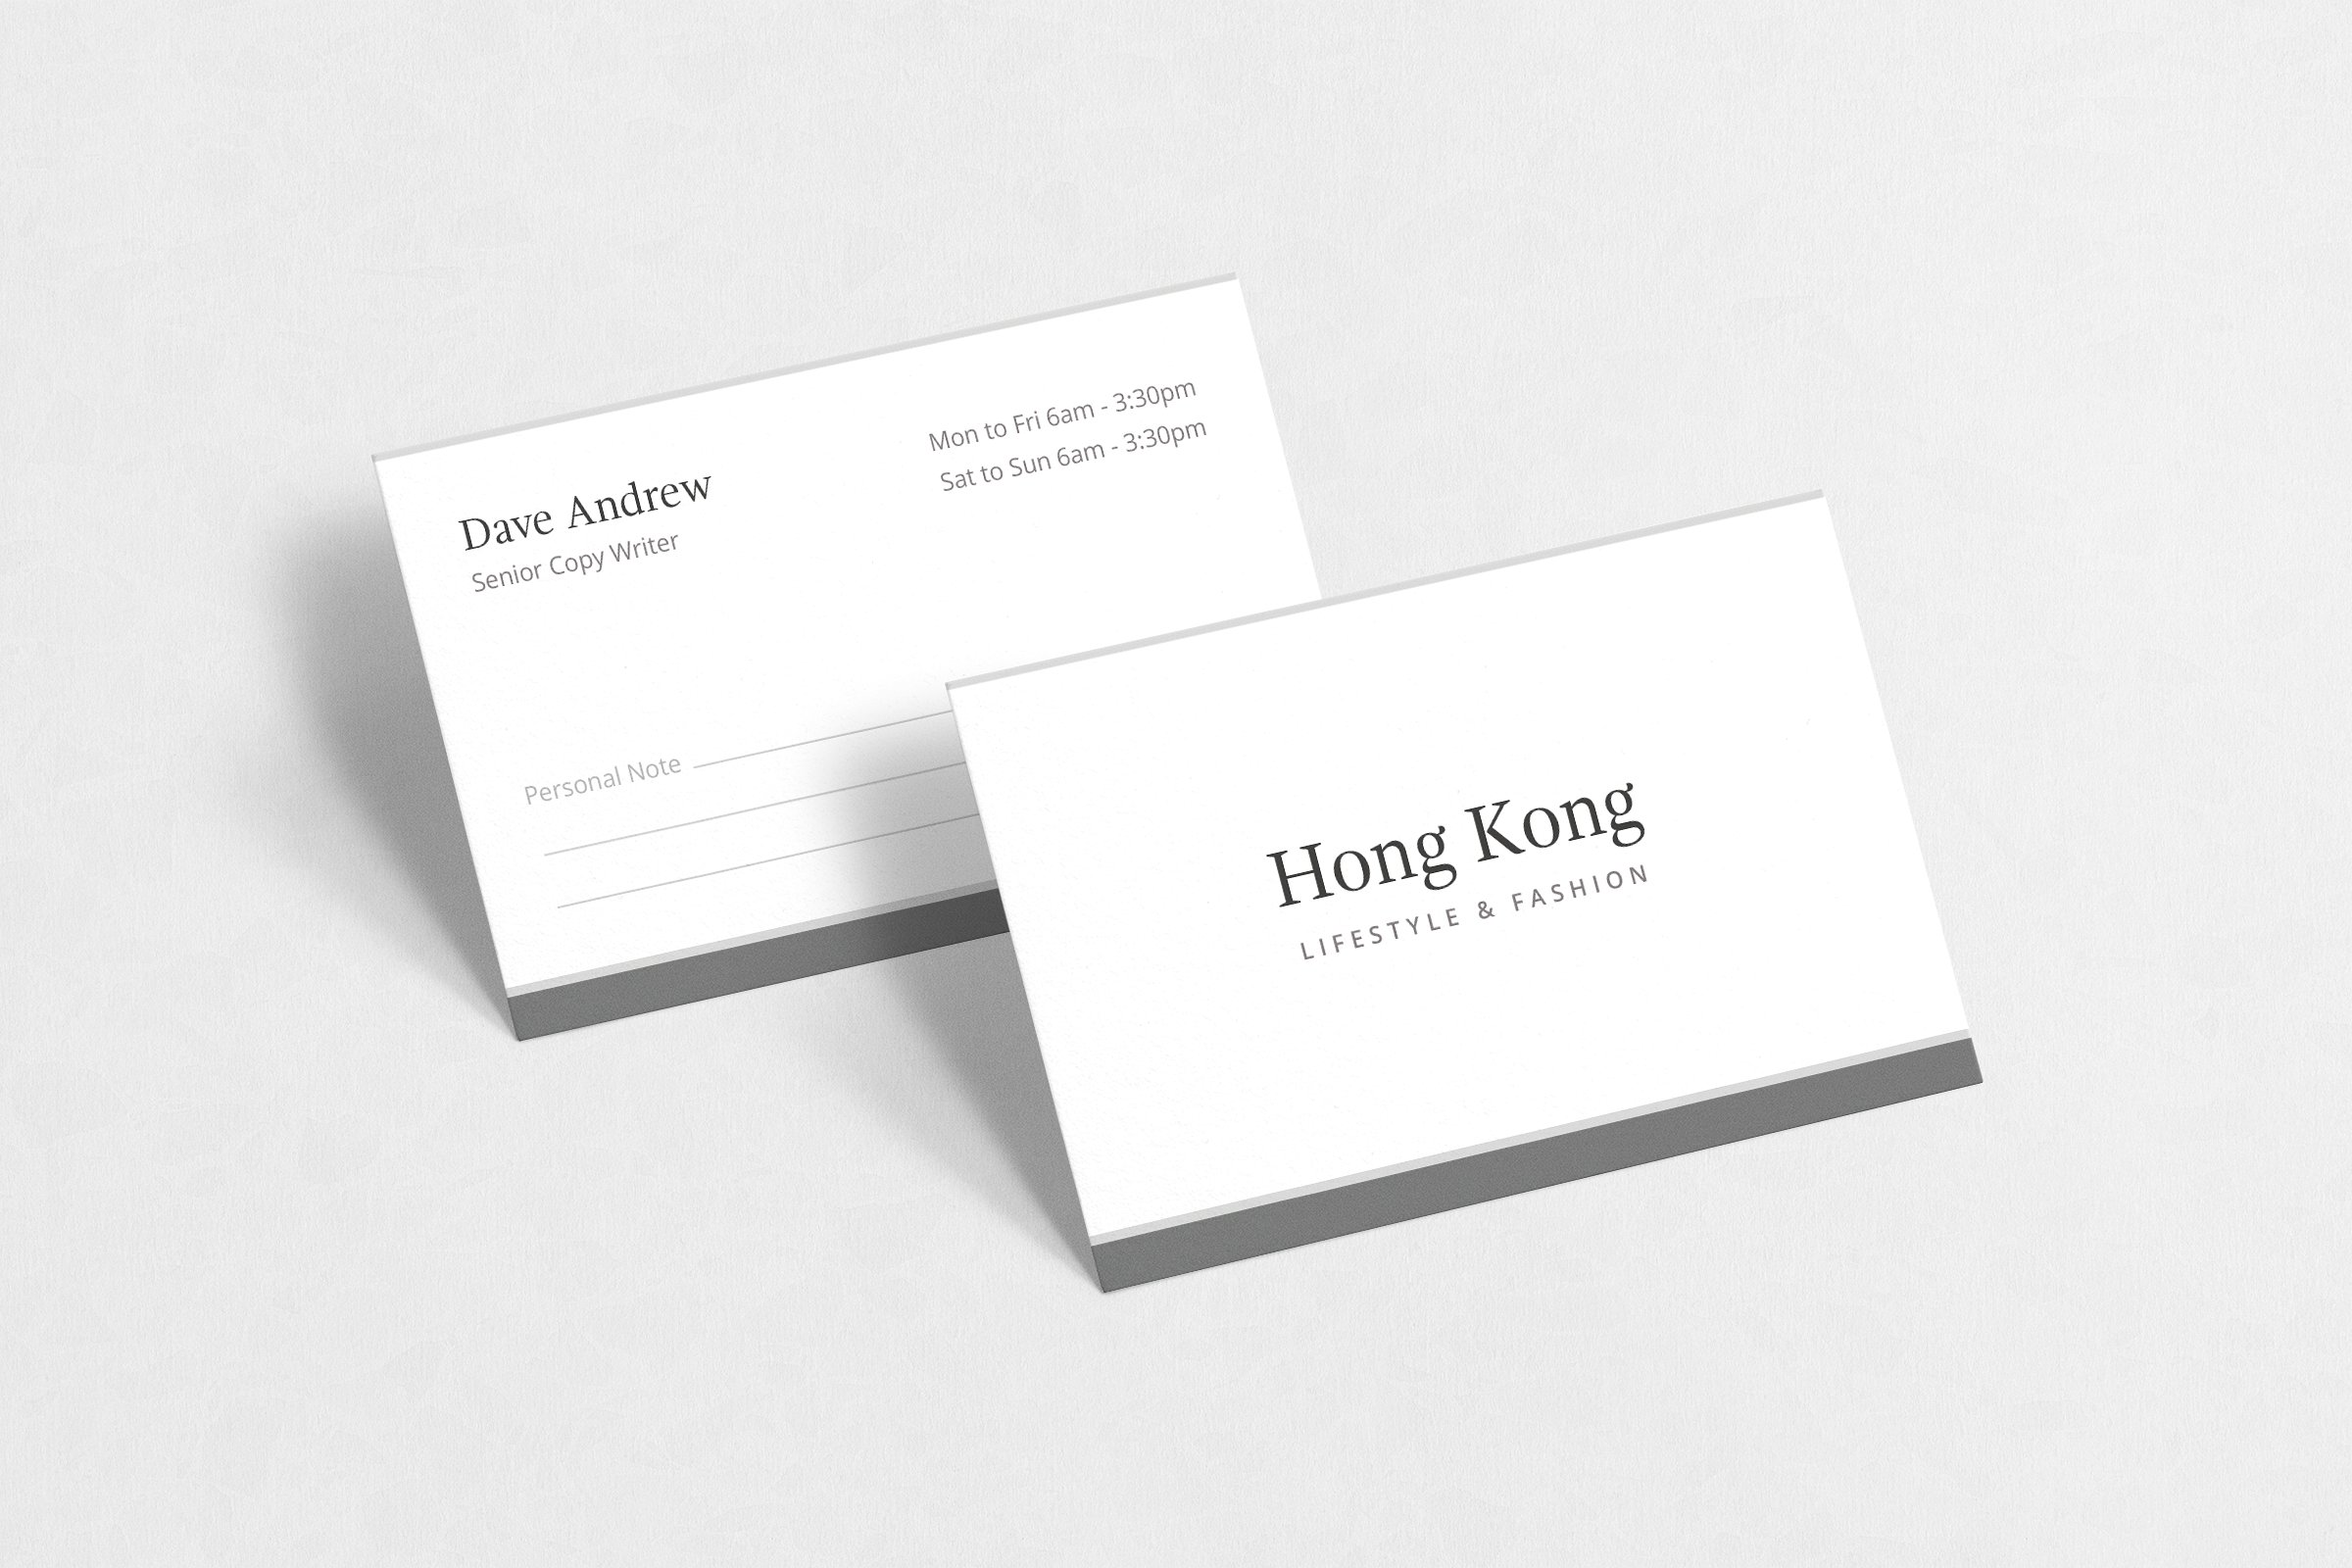 极简主义企业名片设计模板4 Hong Kong Business Card插图(3)